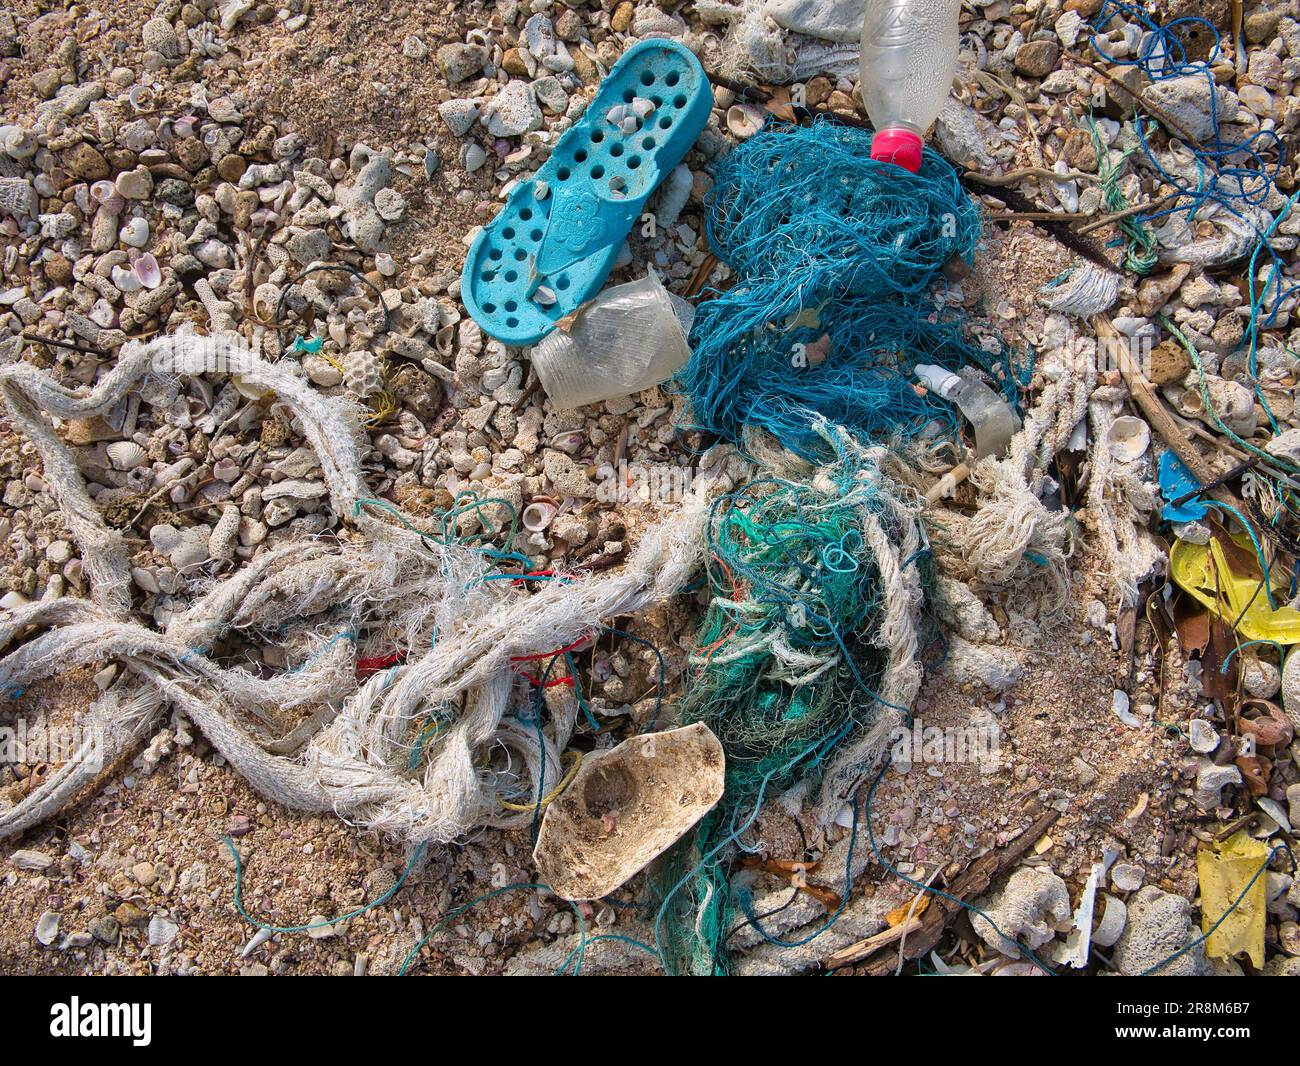 Plastikschutt wurde an einem tropischen Strand angespült. Ein Beispiel für die Meeresplastik-Verschmutzung. Stockfoto